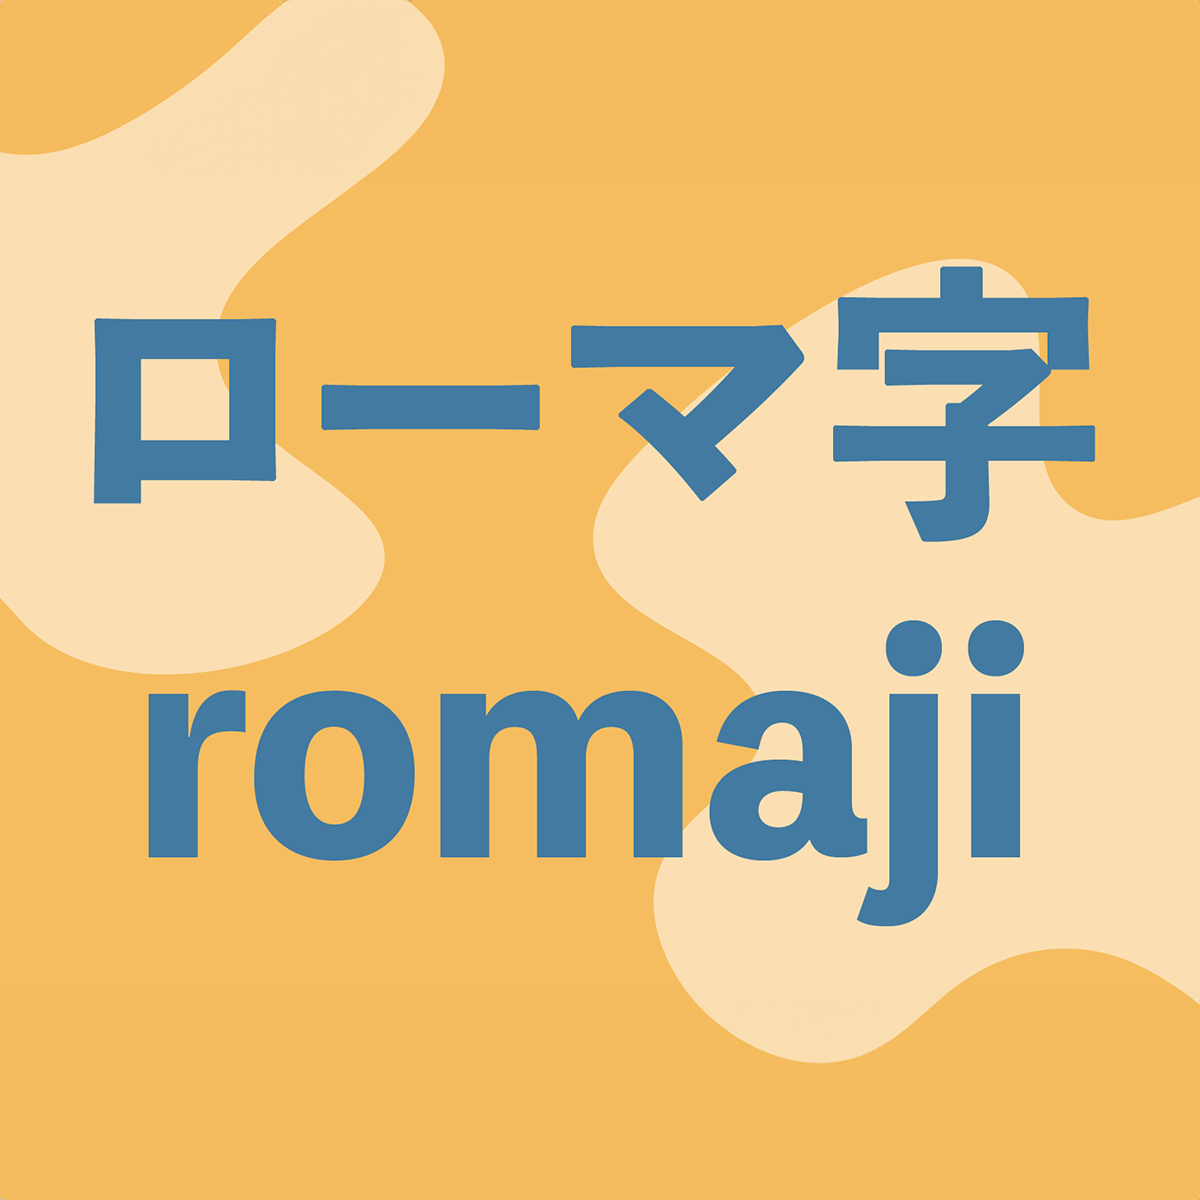 The Rômaji